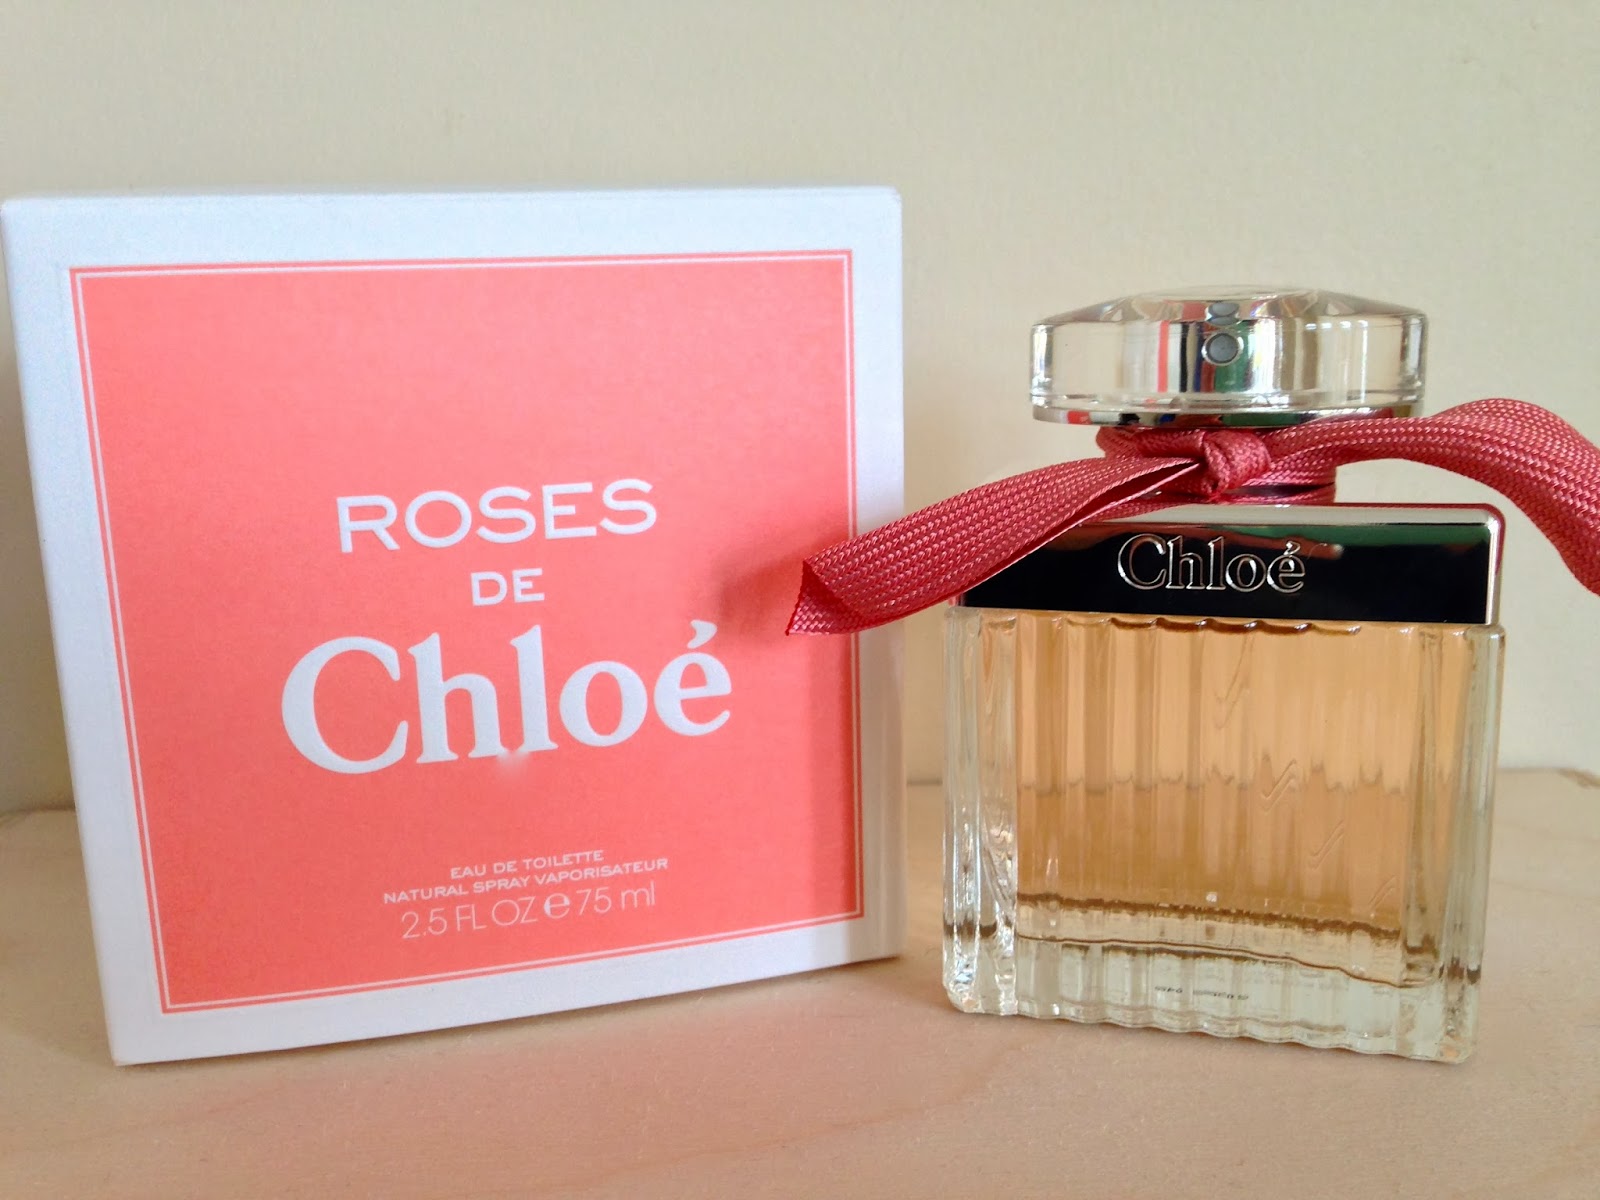 Chloe ross